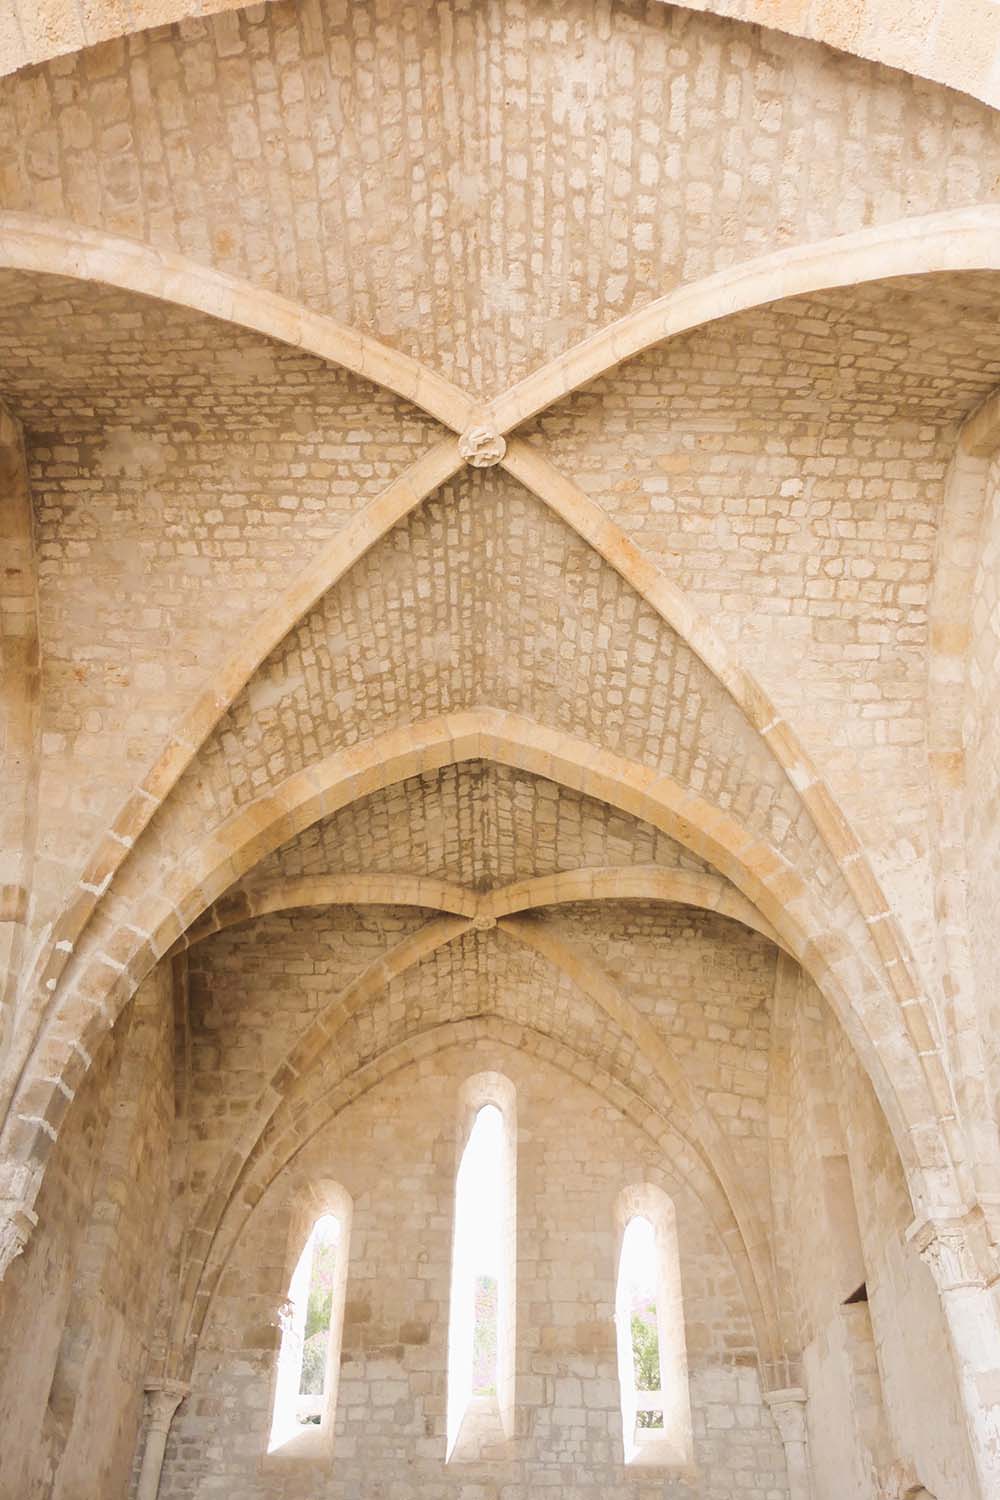 vue de la voute de l'abbaye cistercienne du XIIIe siècle, un joyau historique